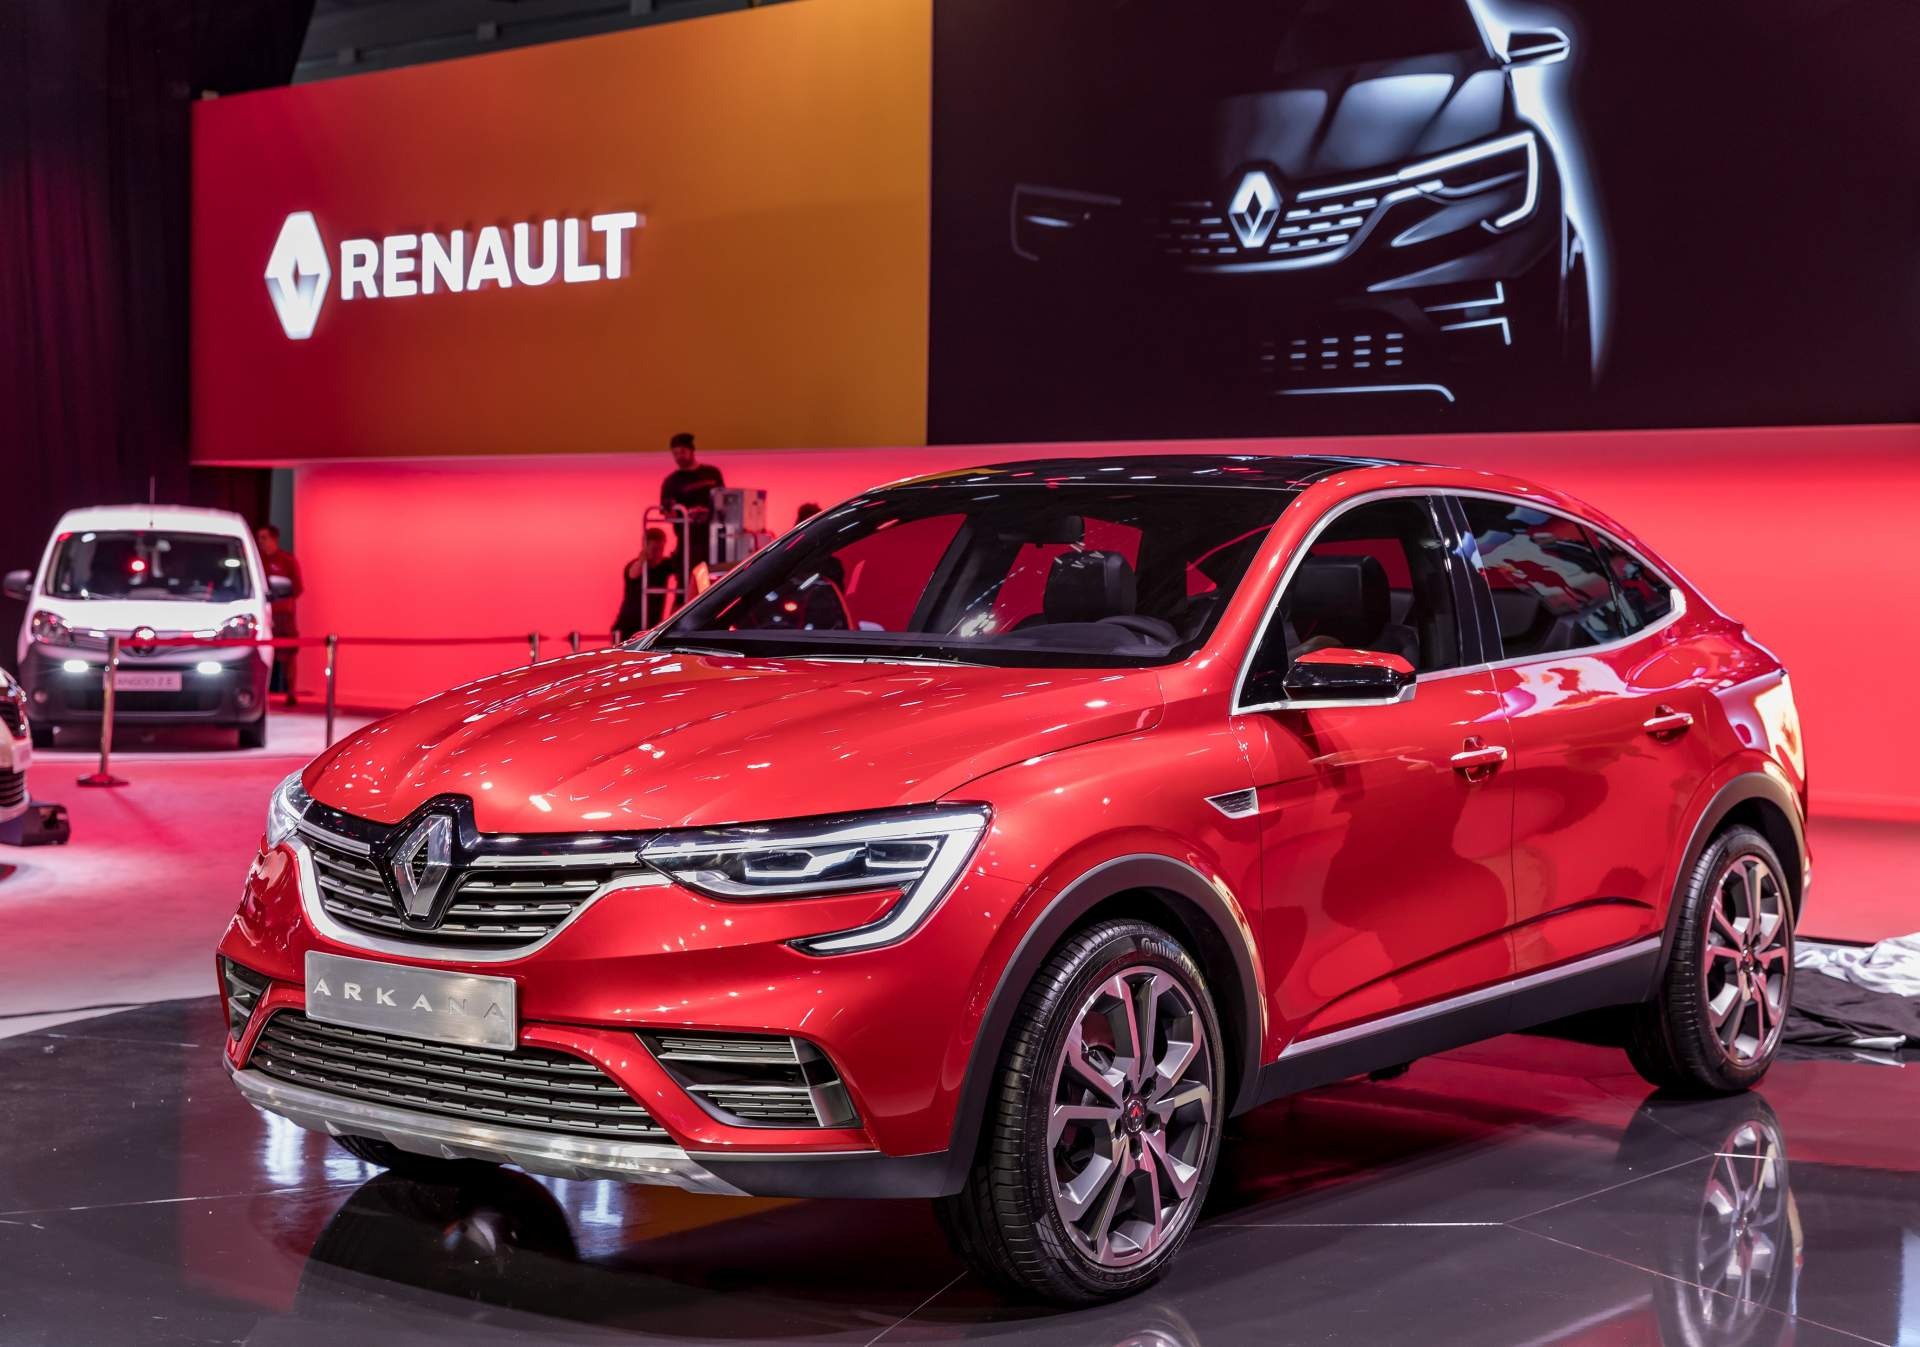 Renault Arkana ortaya çıktı; işte Fransız üreticinin çok konuşulan coupe-SUV modeli